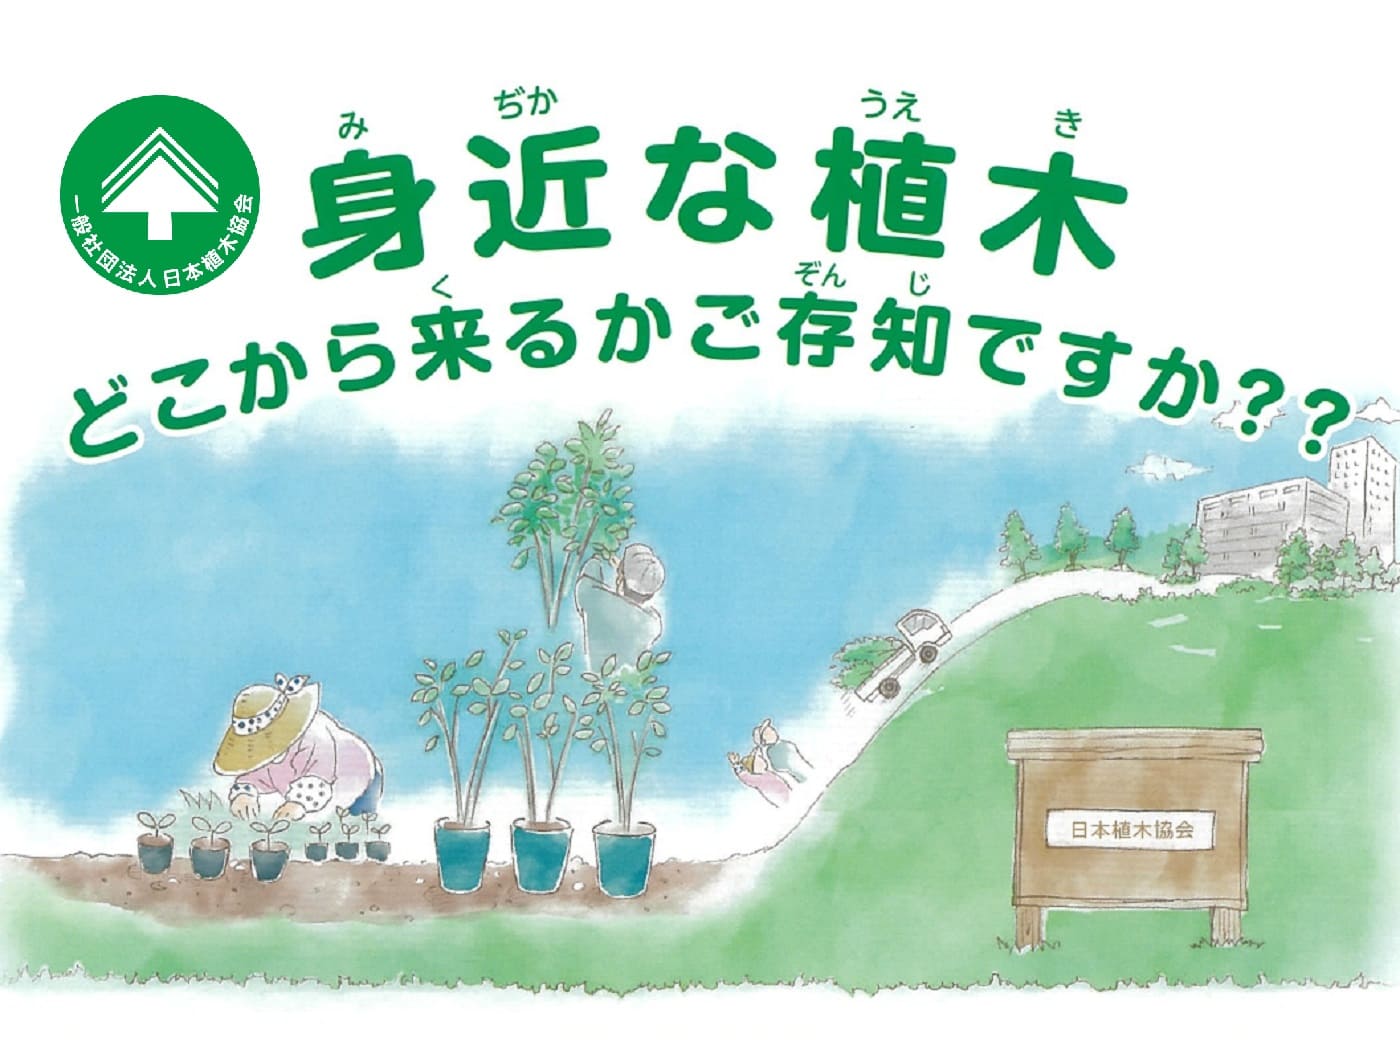 一般社団法人日本植木協会